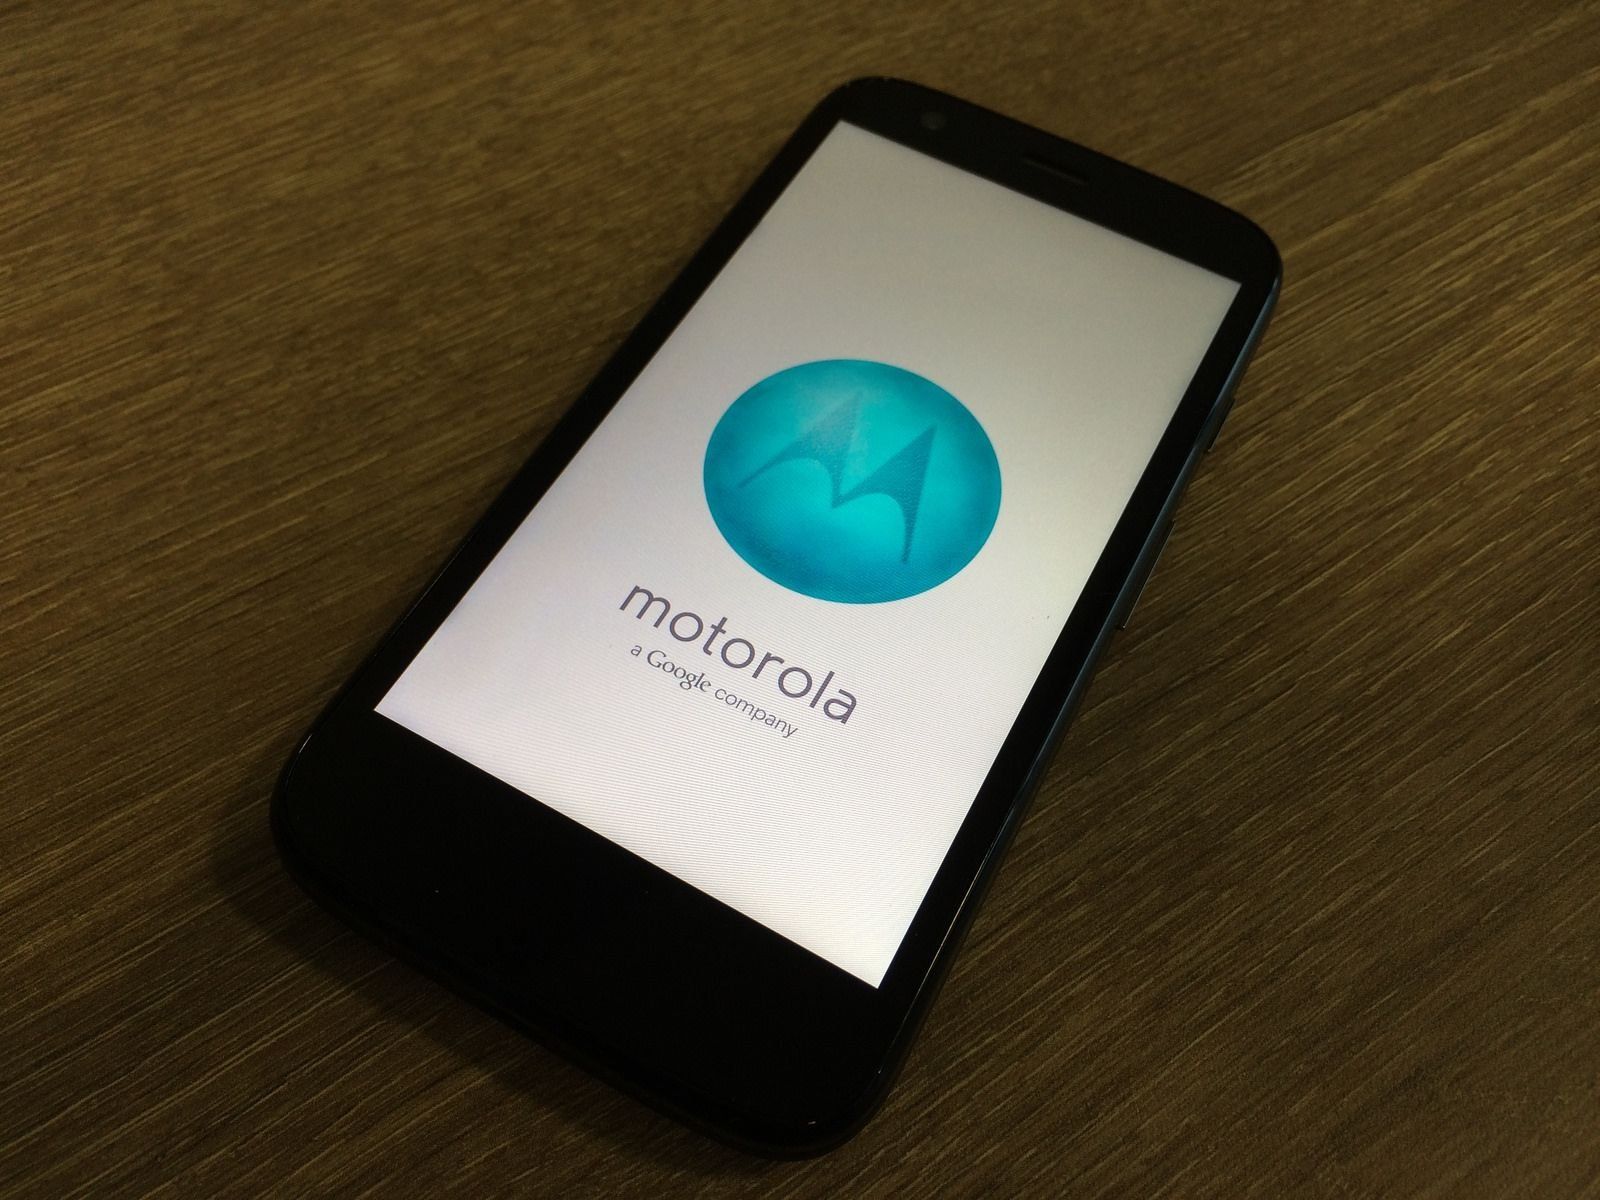 Telefon pintar Motorola One and One Power (P30 One) - kelebihan dan kekurangan